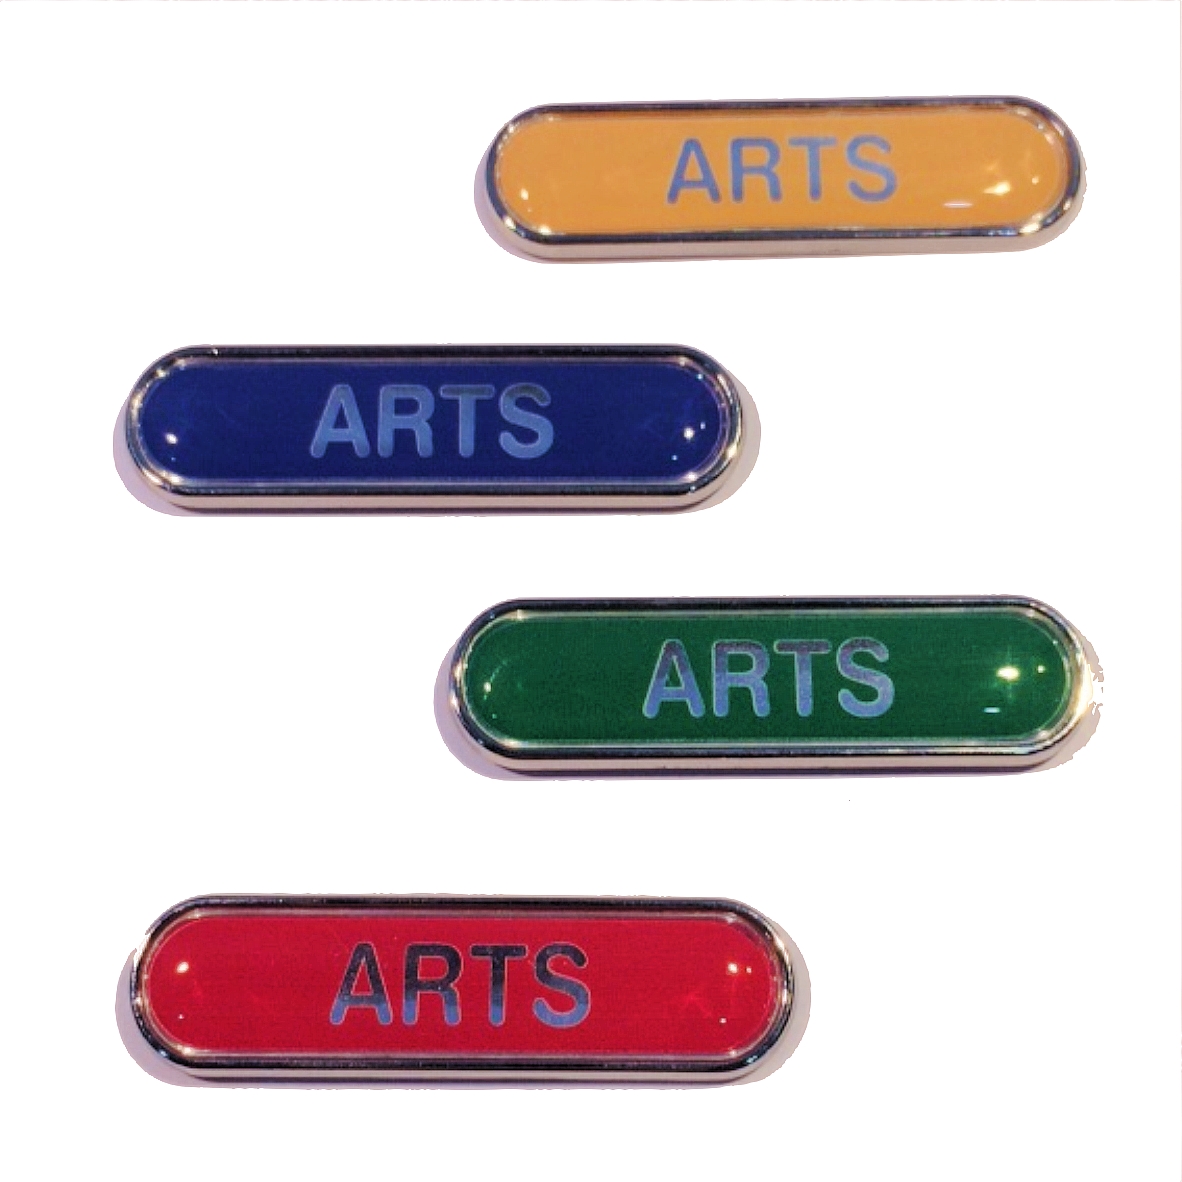 ARTS bar badge